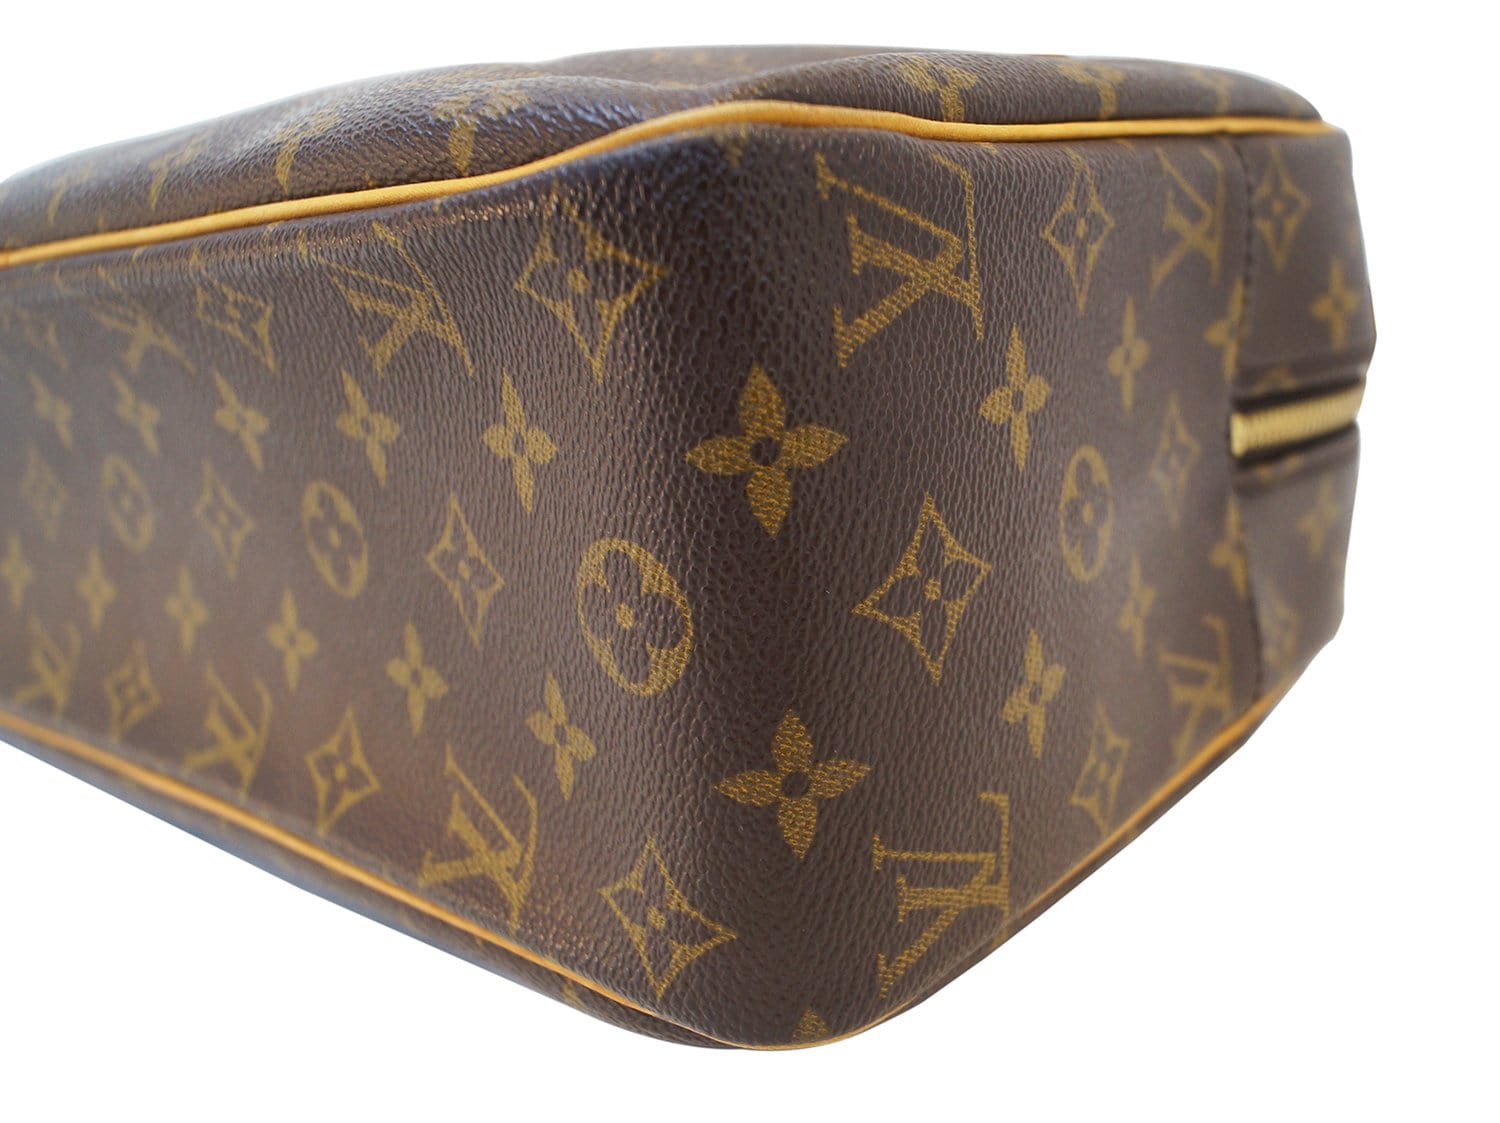 Louis Vuitton Cite GM Monogram Shoulder Bag for Sale in Houston